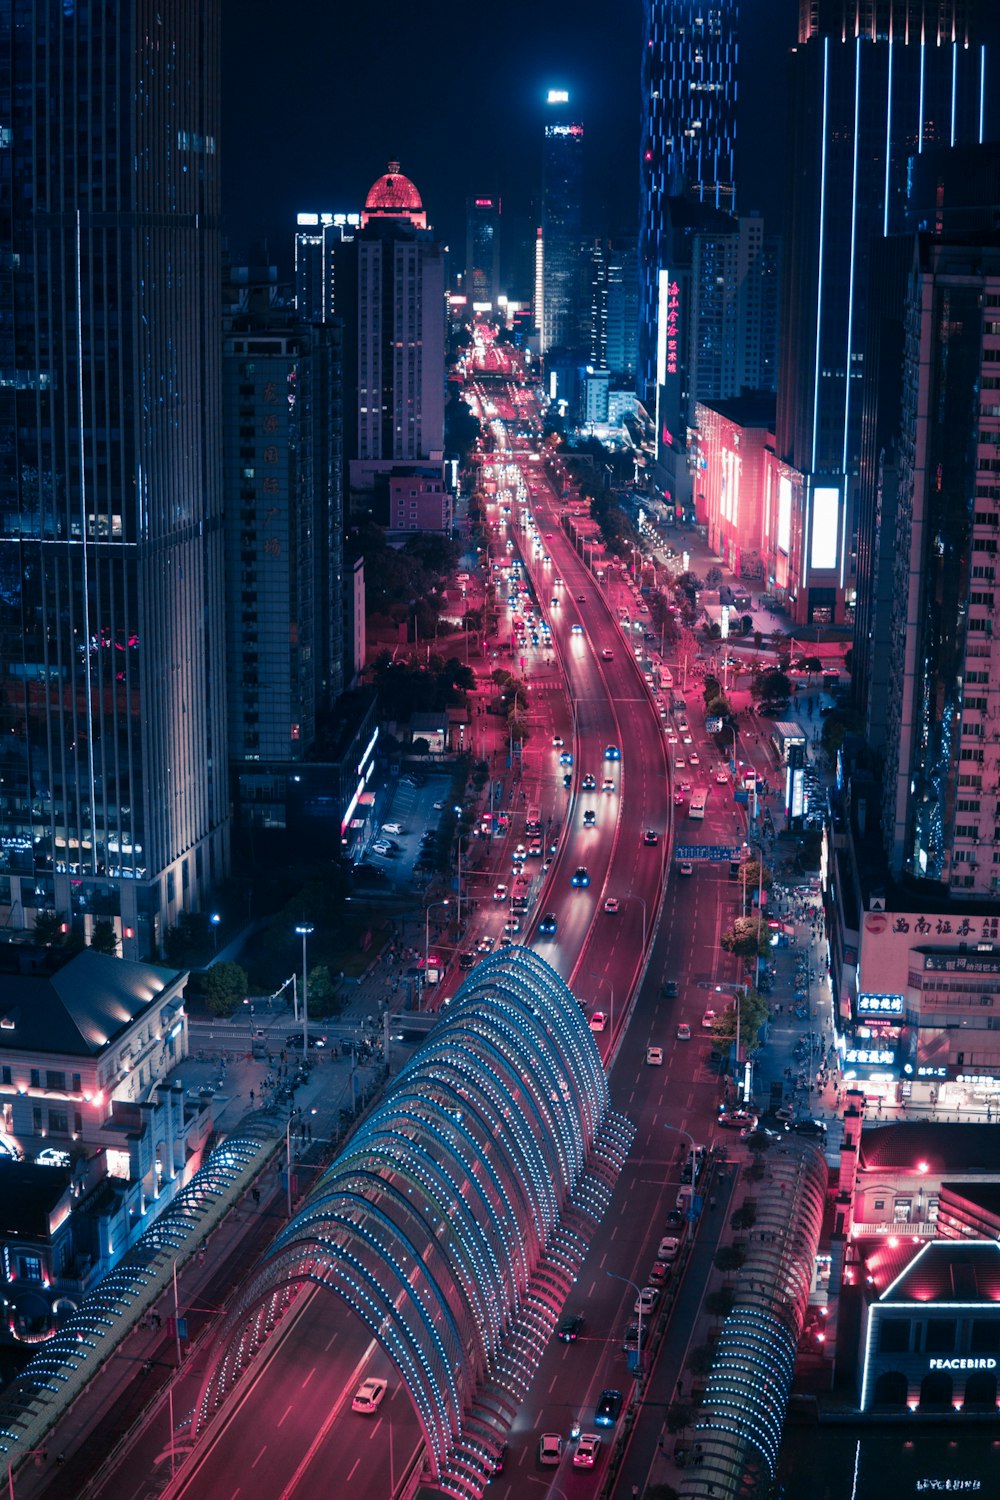 Fotografia em lapso de tempo do veículo que viaja perto da estrada entre arranha-céus durante a noite